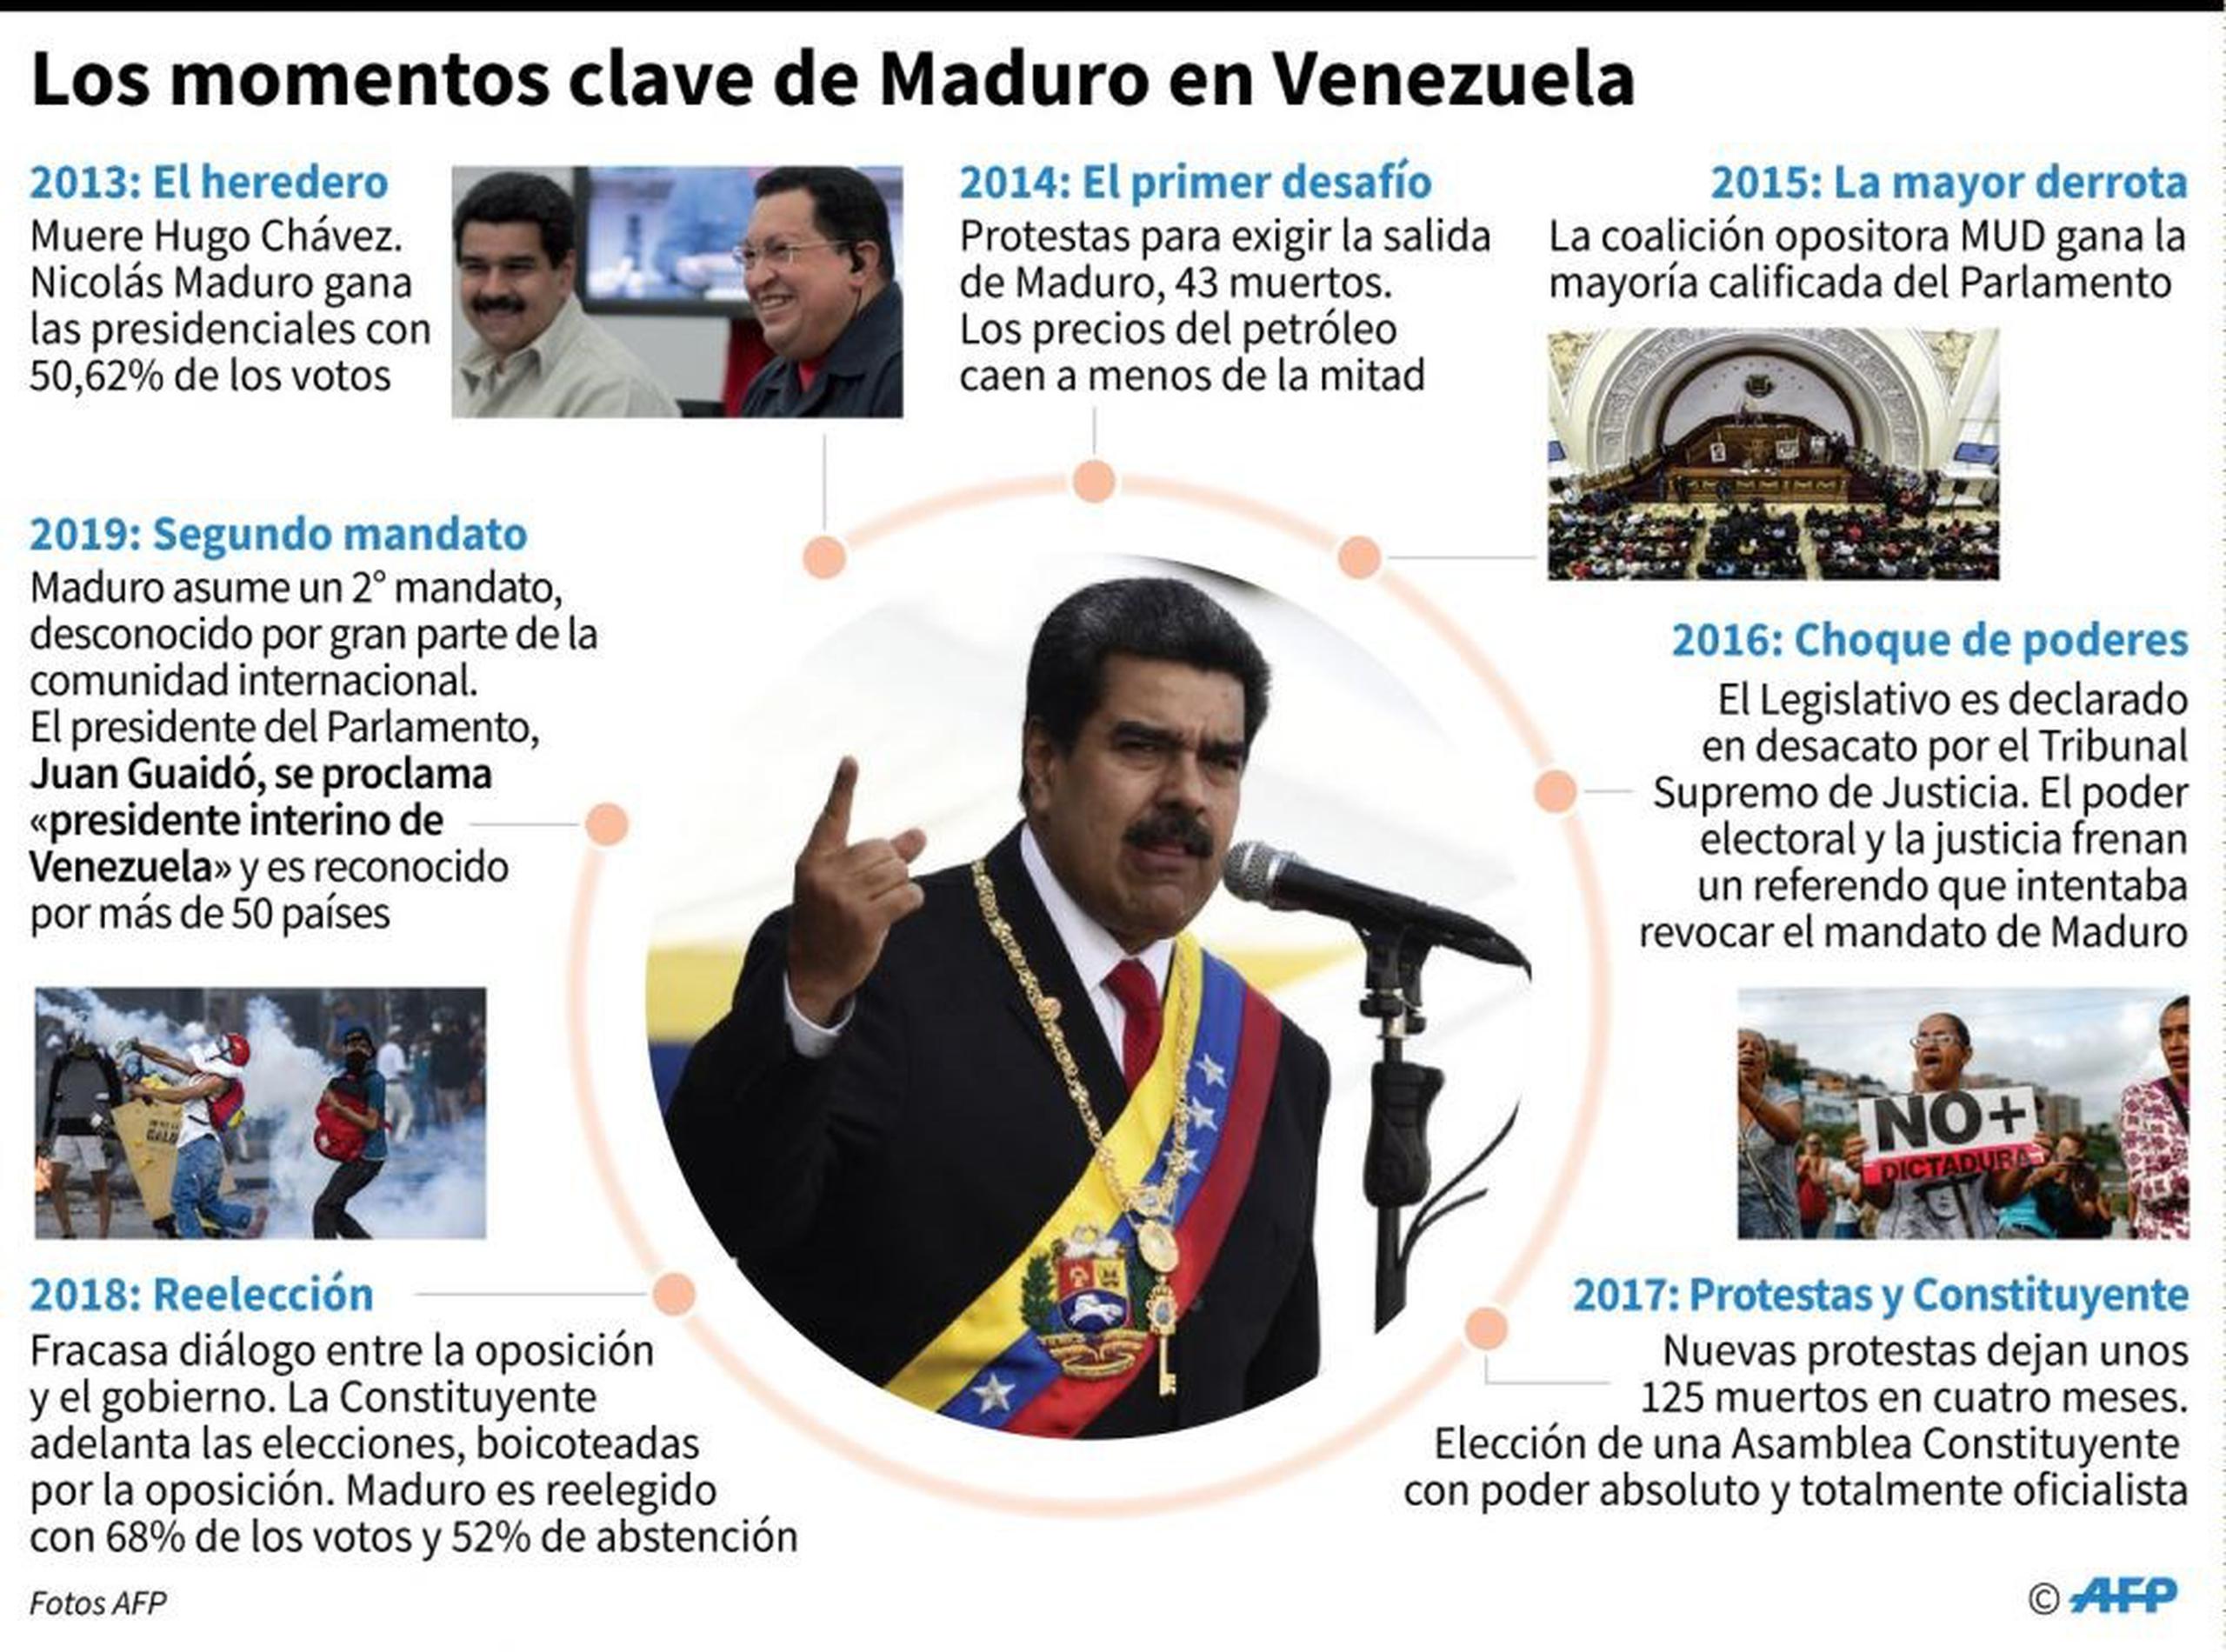 Momentos clave de Maduro en Venezuela. (AP)